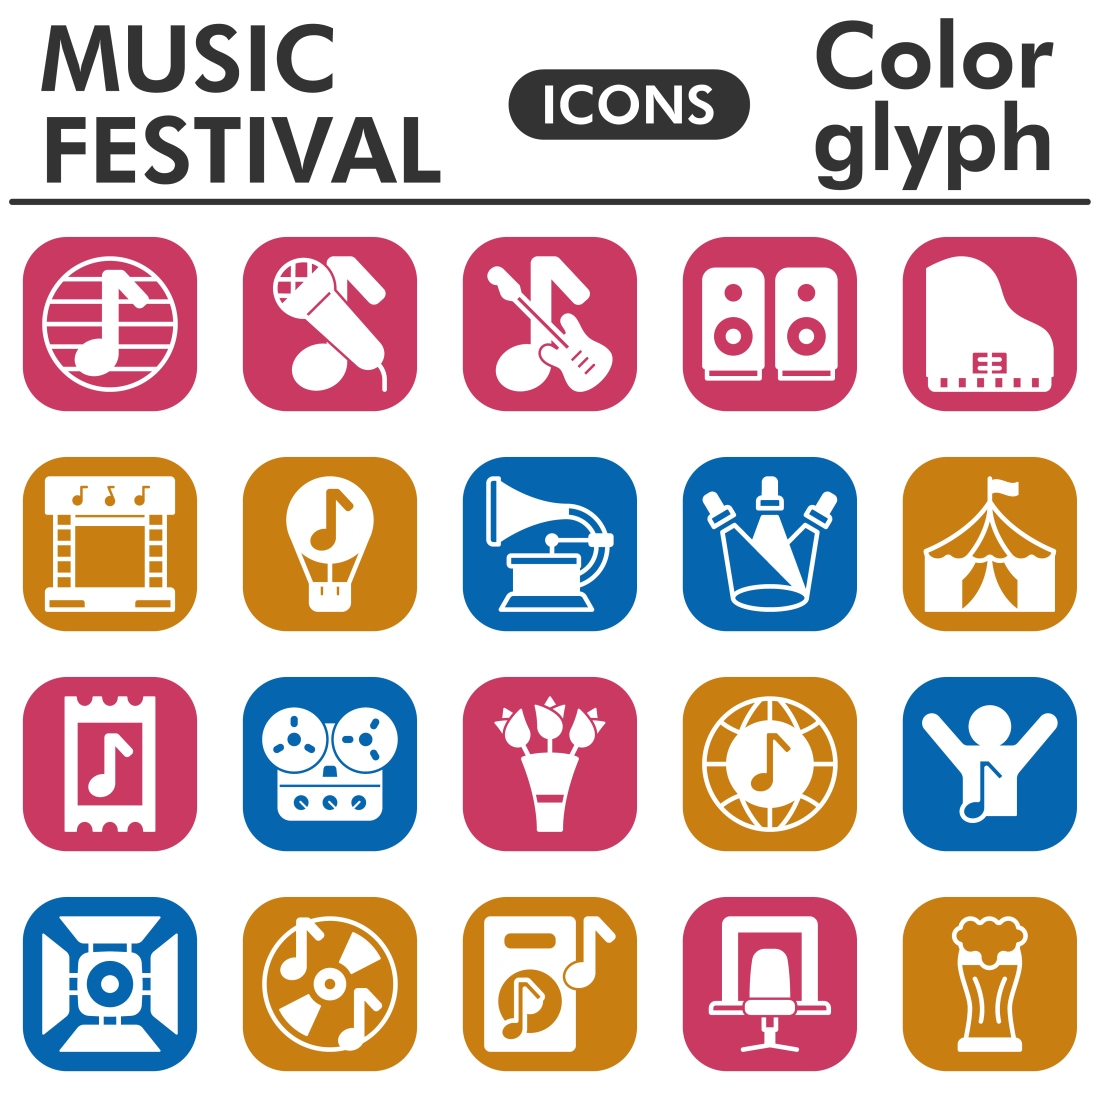 Muzic festival icons set, color glyph preview image.